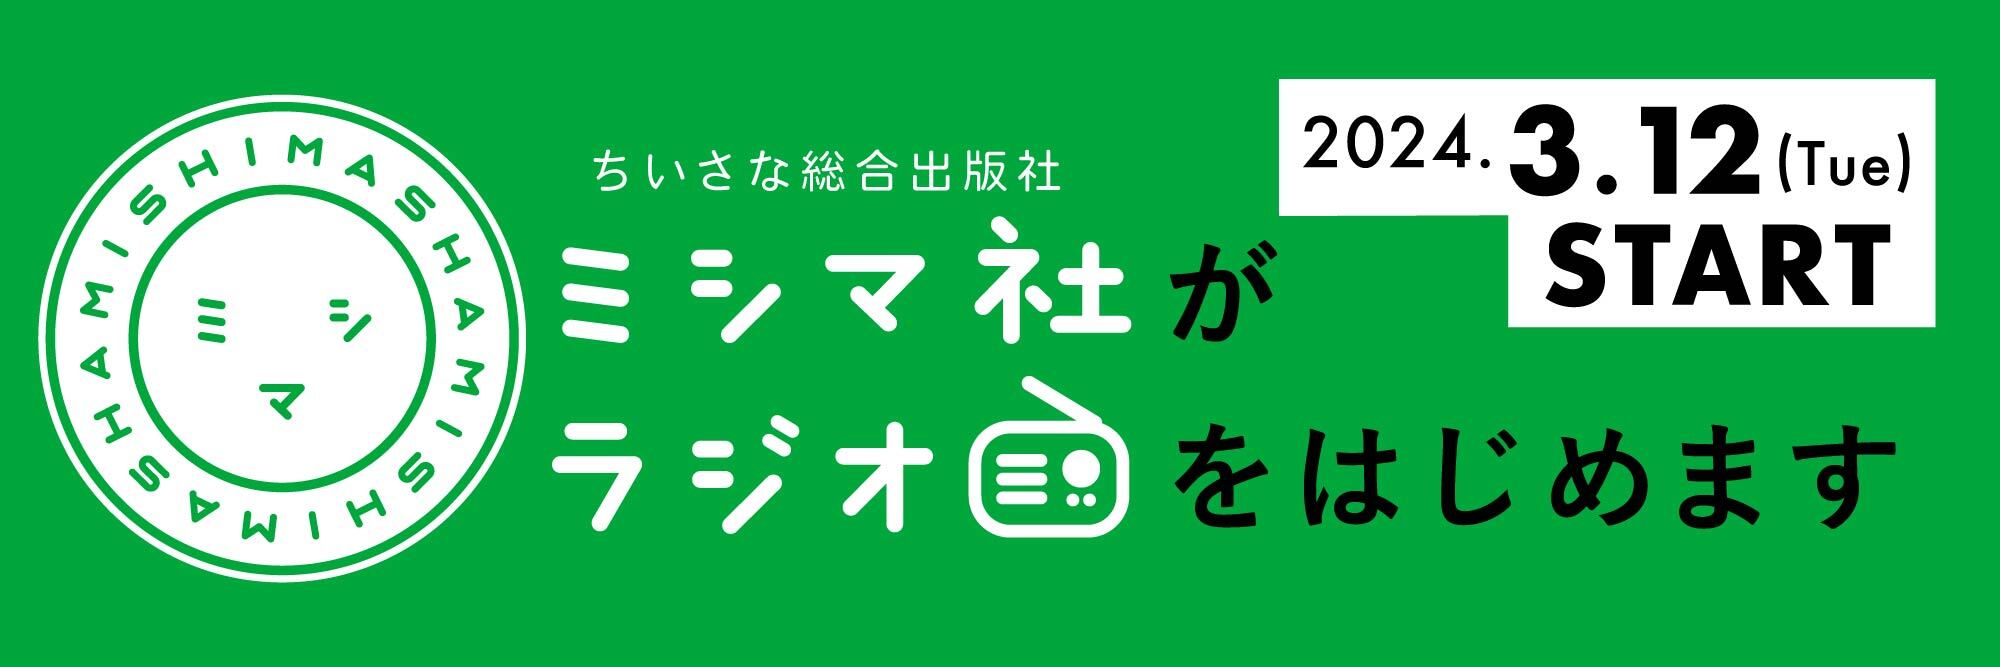 ミシマ社がラジオをはじめます 2024.3.12 (Tue) START